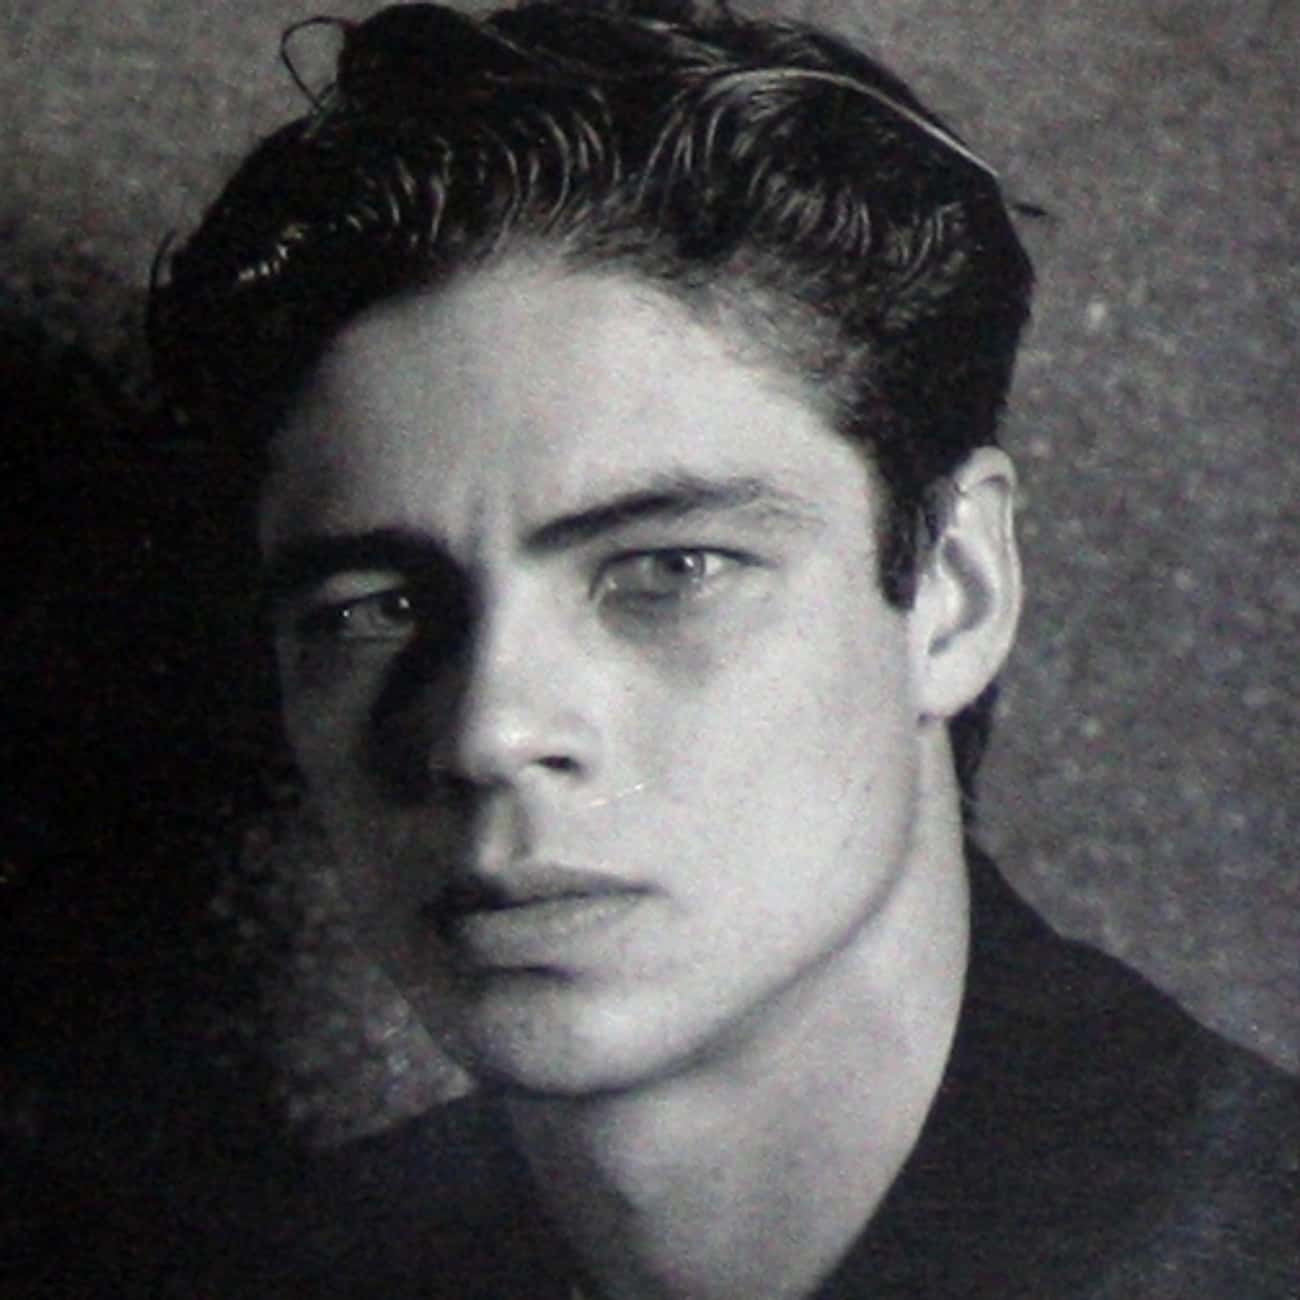 Young Benicio Del Toro in Black Sports Coat